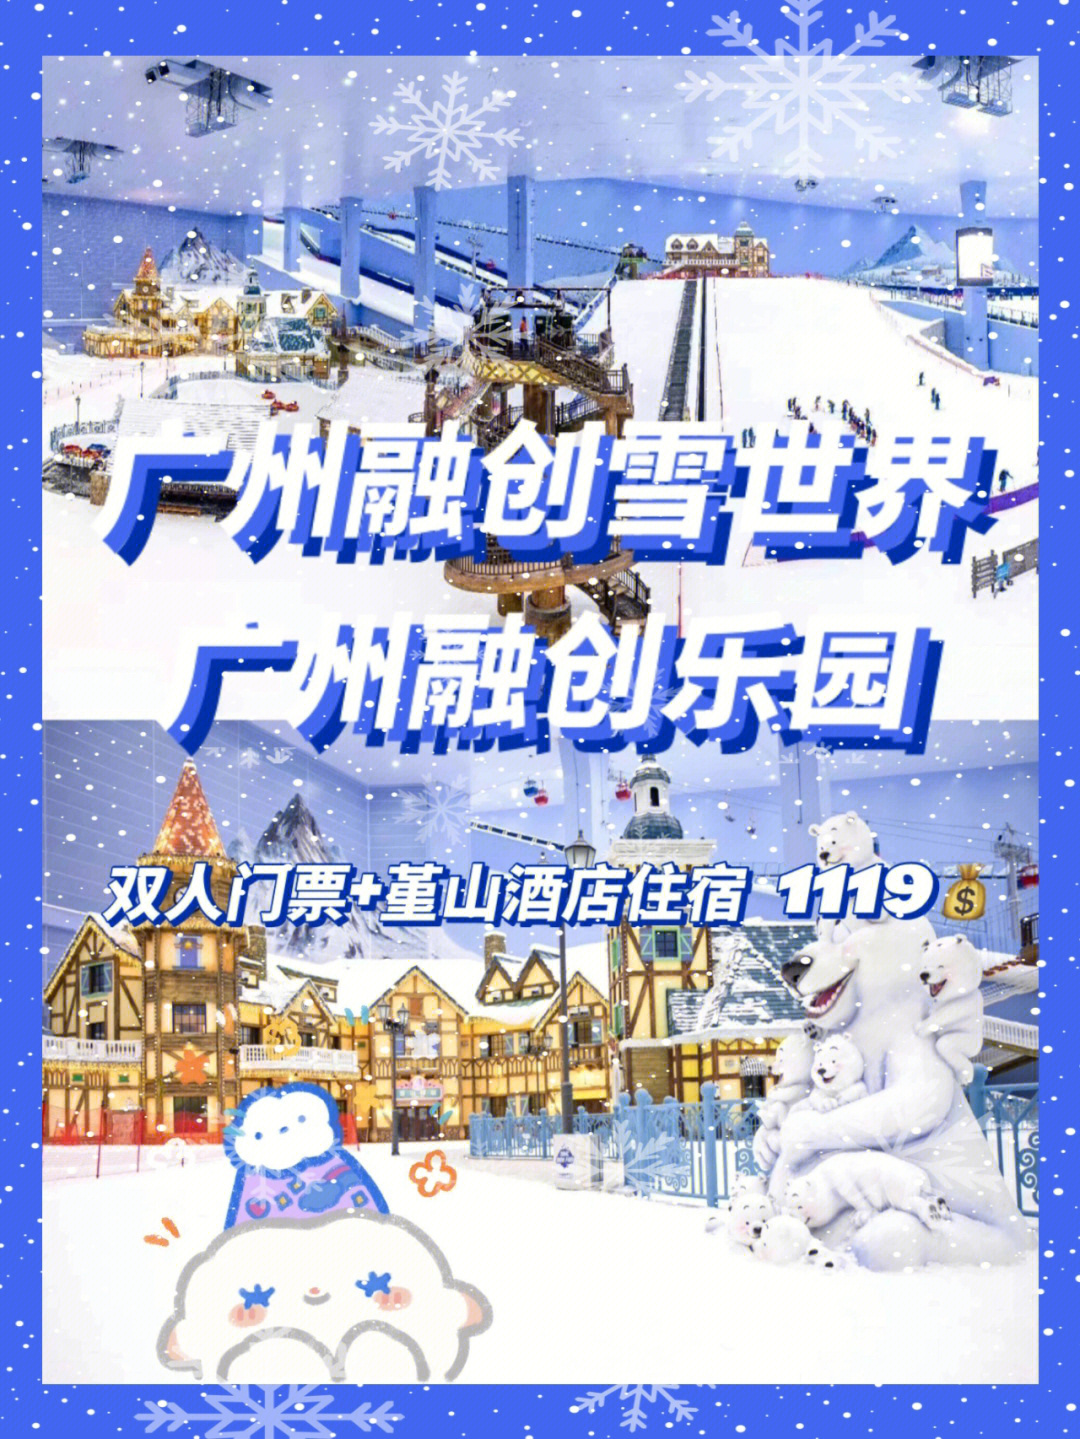 广州融创雪世界价目表图片